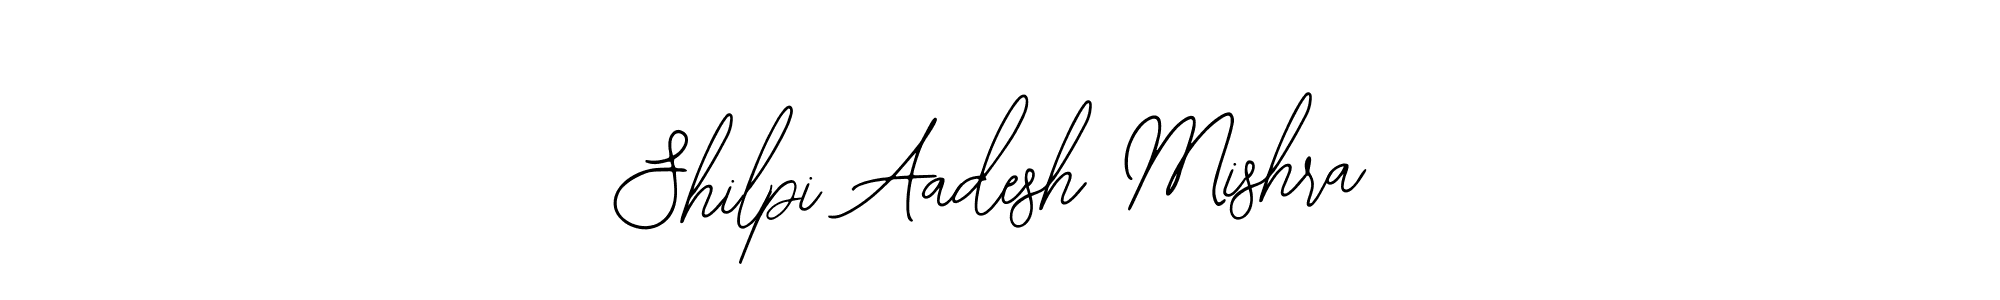 How to Draw Shilpi Aadesh Mishra signature style? Bearetta-2O07w is a latest design signature styles for name Shilpi Aadesh Mishra. Shilpi Aadesh Mishra signature style 12 images and pictures png